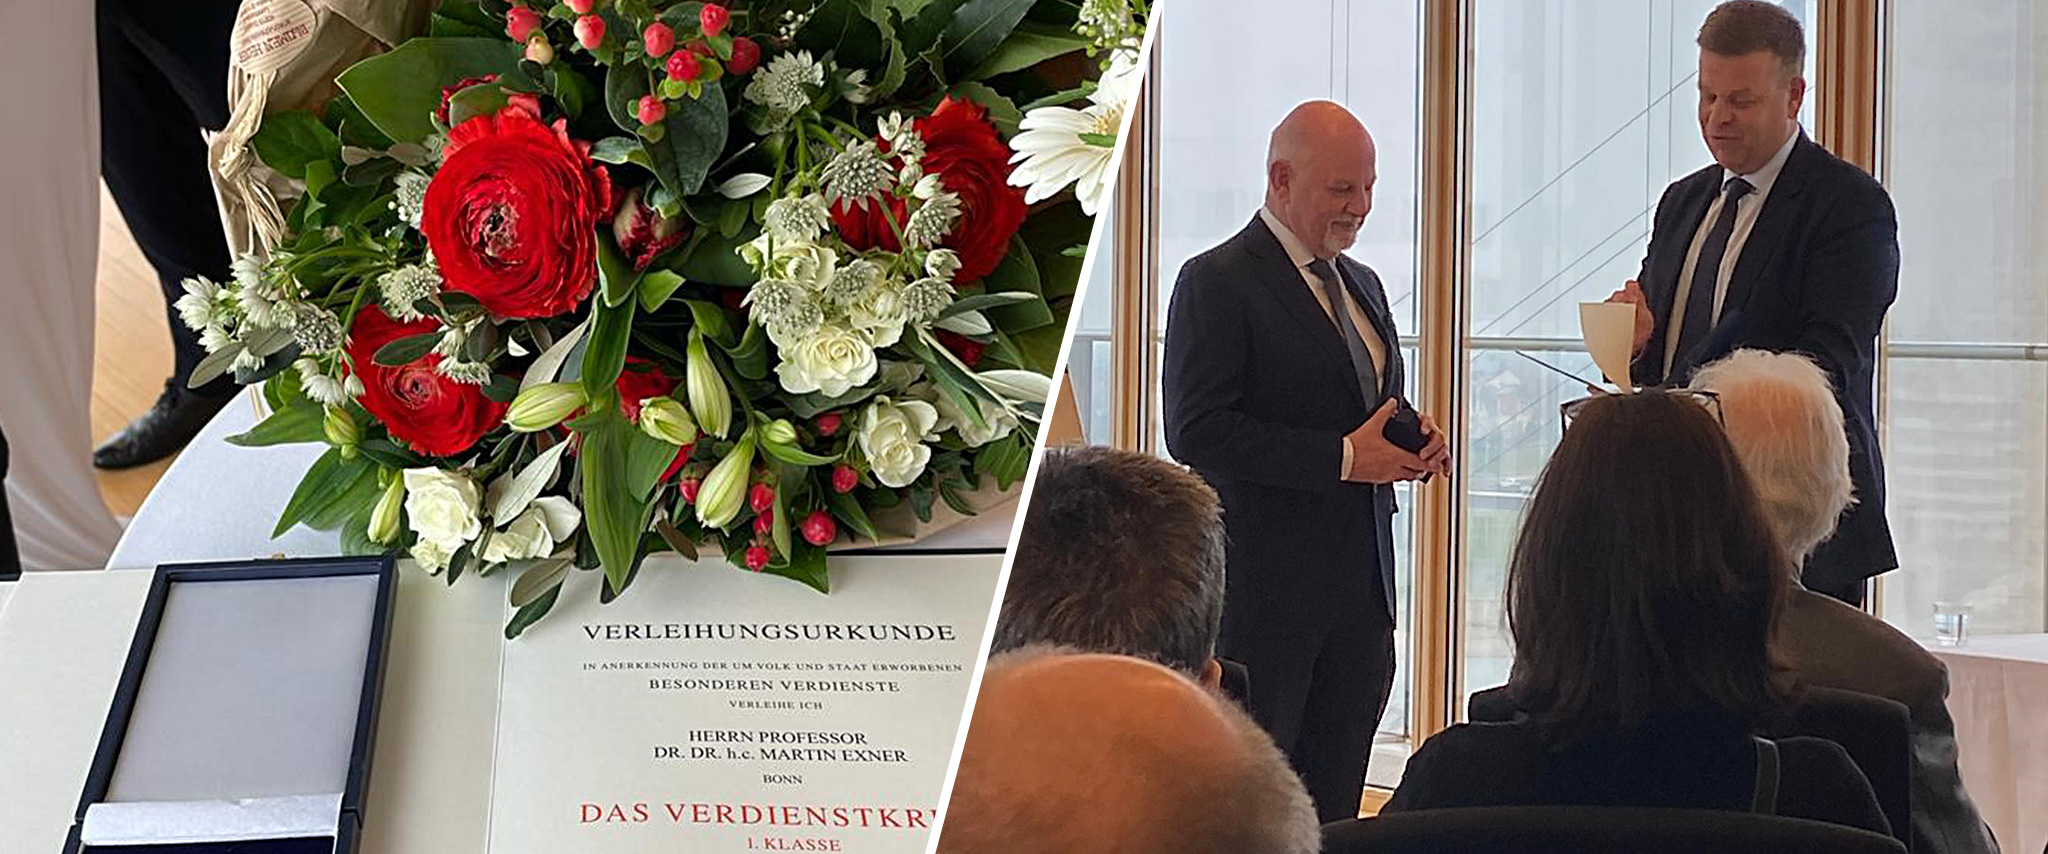 Verleihung des Verdienstordens der Bundesrepublik Deutschland 1. Klasse an Prof. Dr. med. Dr. h.c. Martin Exner